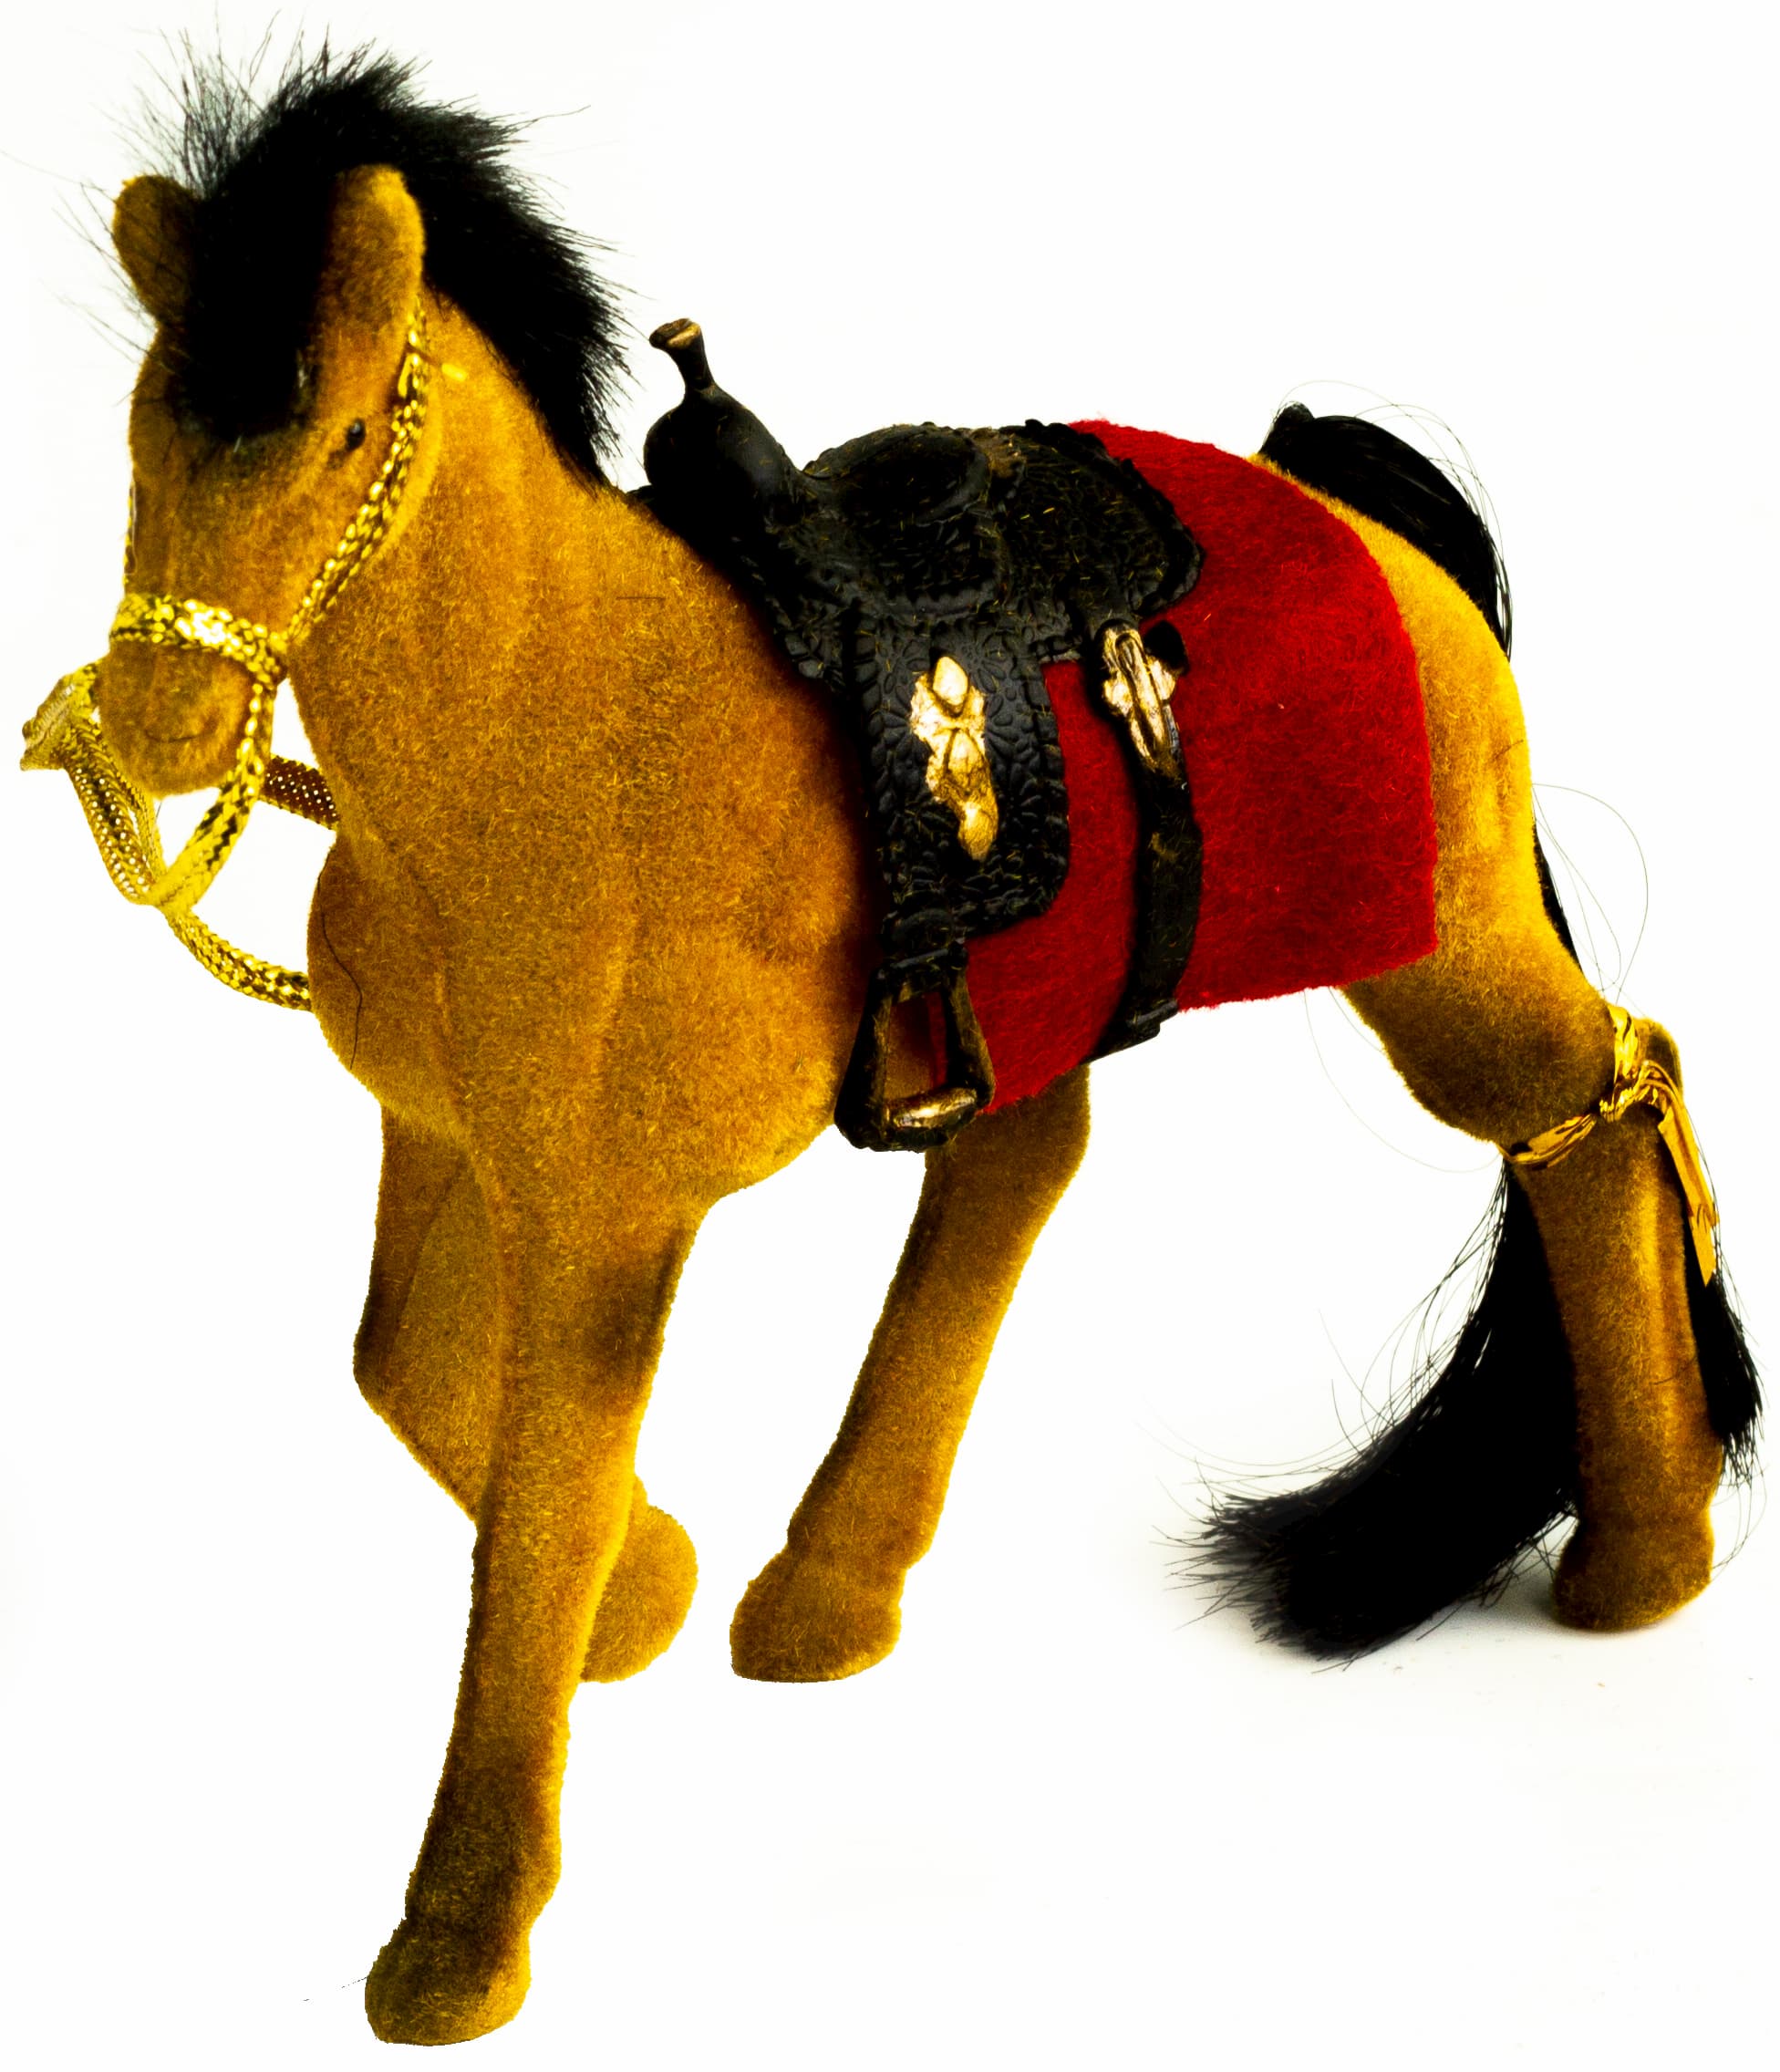 Детская кукольная игрушечная фигурка «Лошадка» 2549-8-9, для девочек, 12 см. / Коричневый